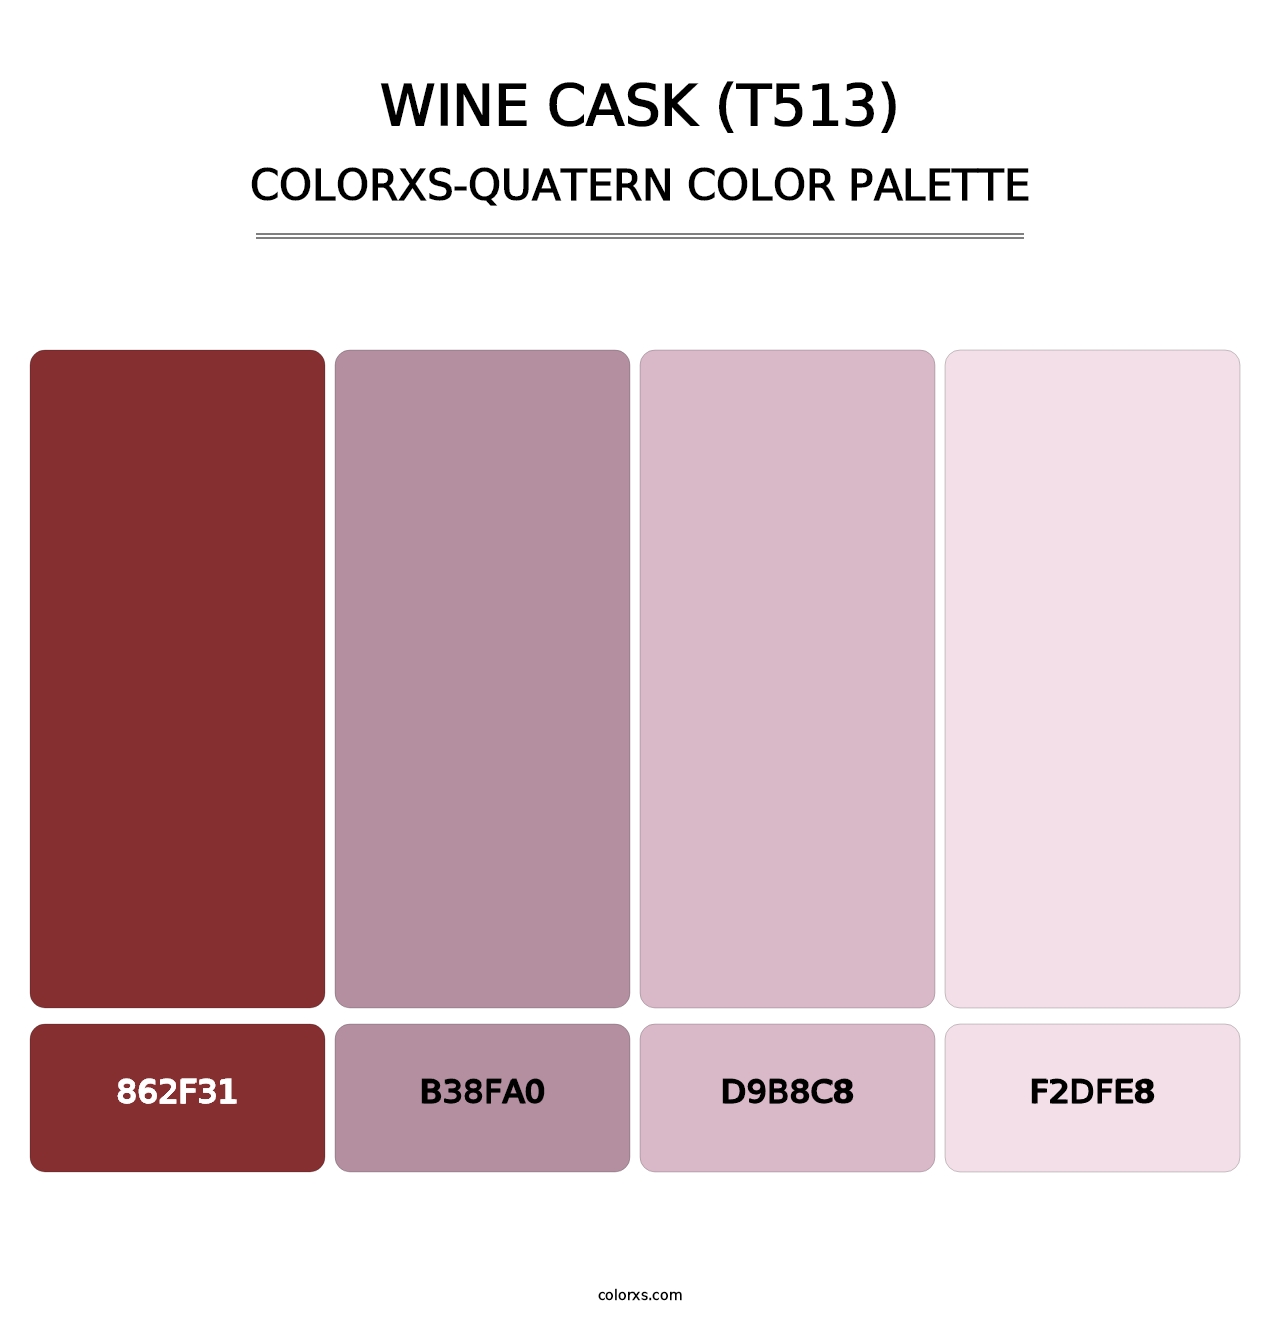 Wine Cask (T513) - Colorxs Quatern Palette